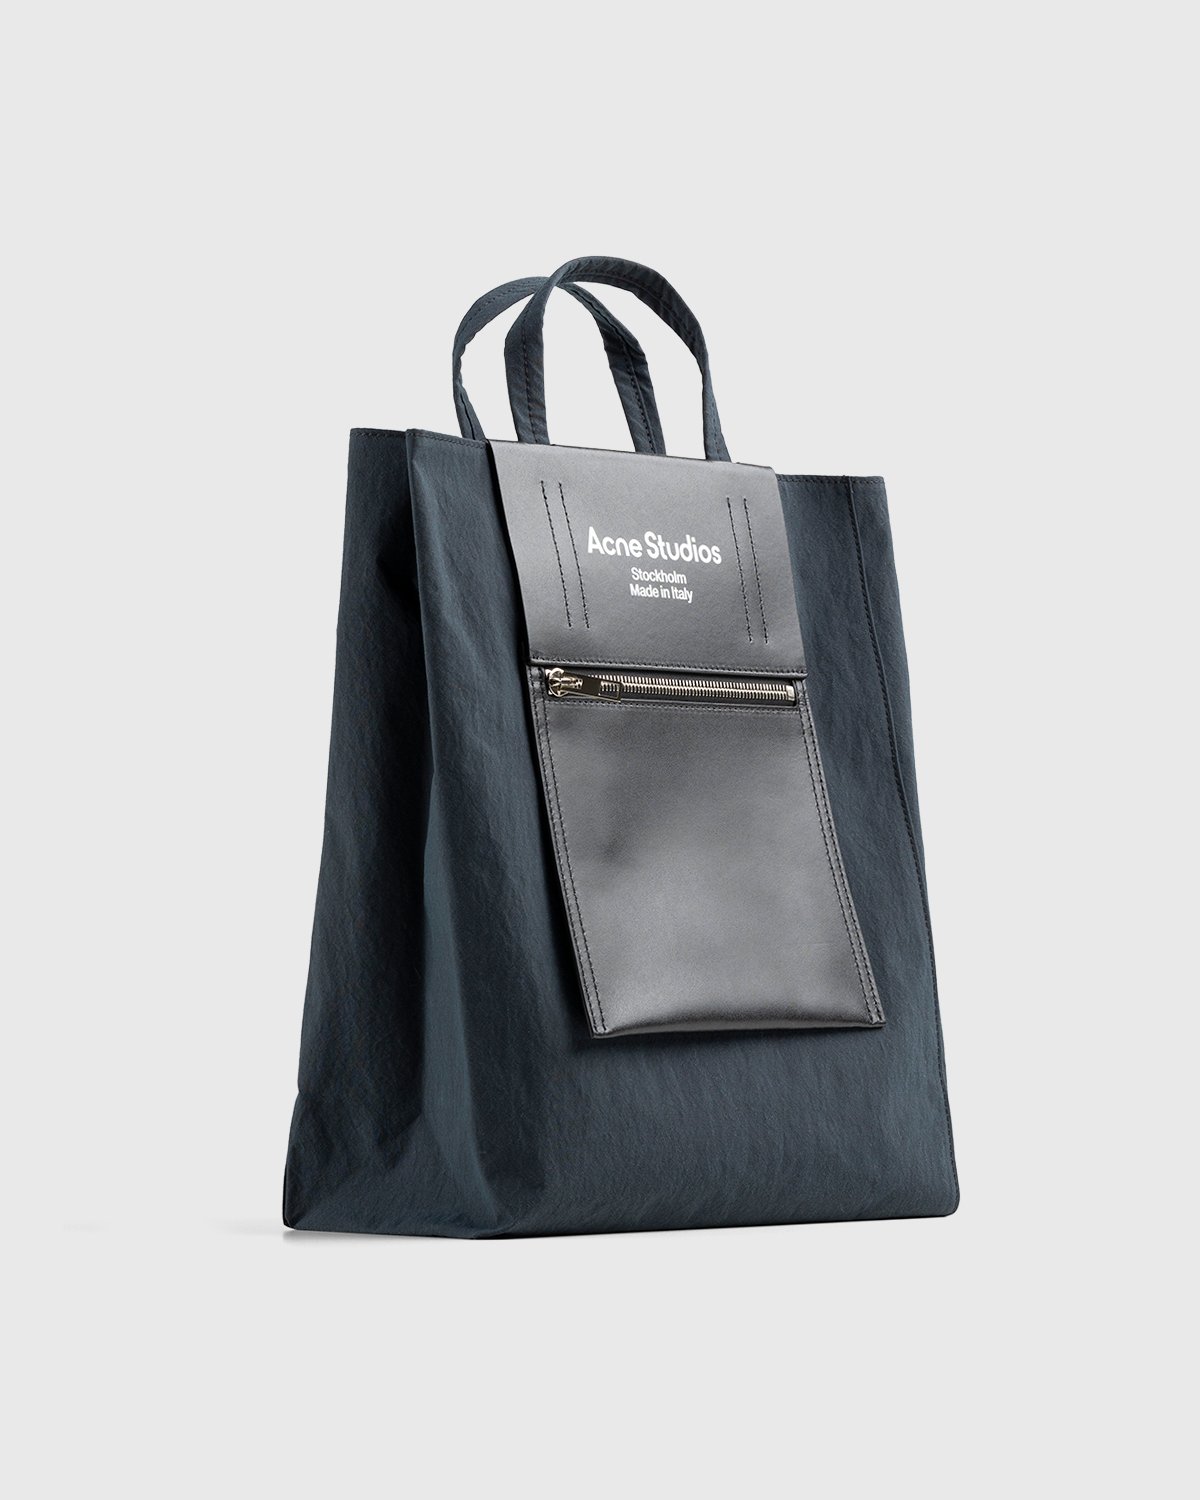 Acne Studios - Medium Nylon Tote Bag Black - Accessories - Black - Image 3